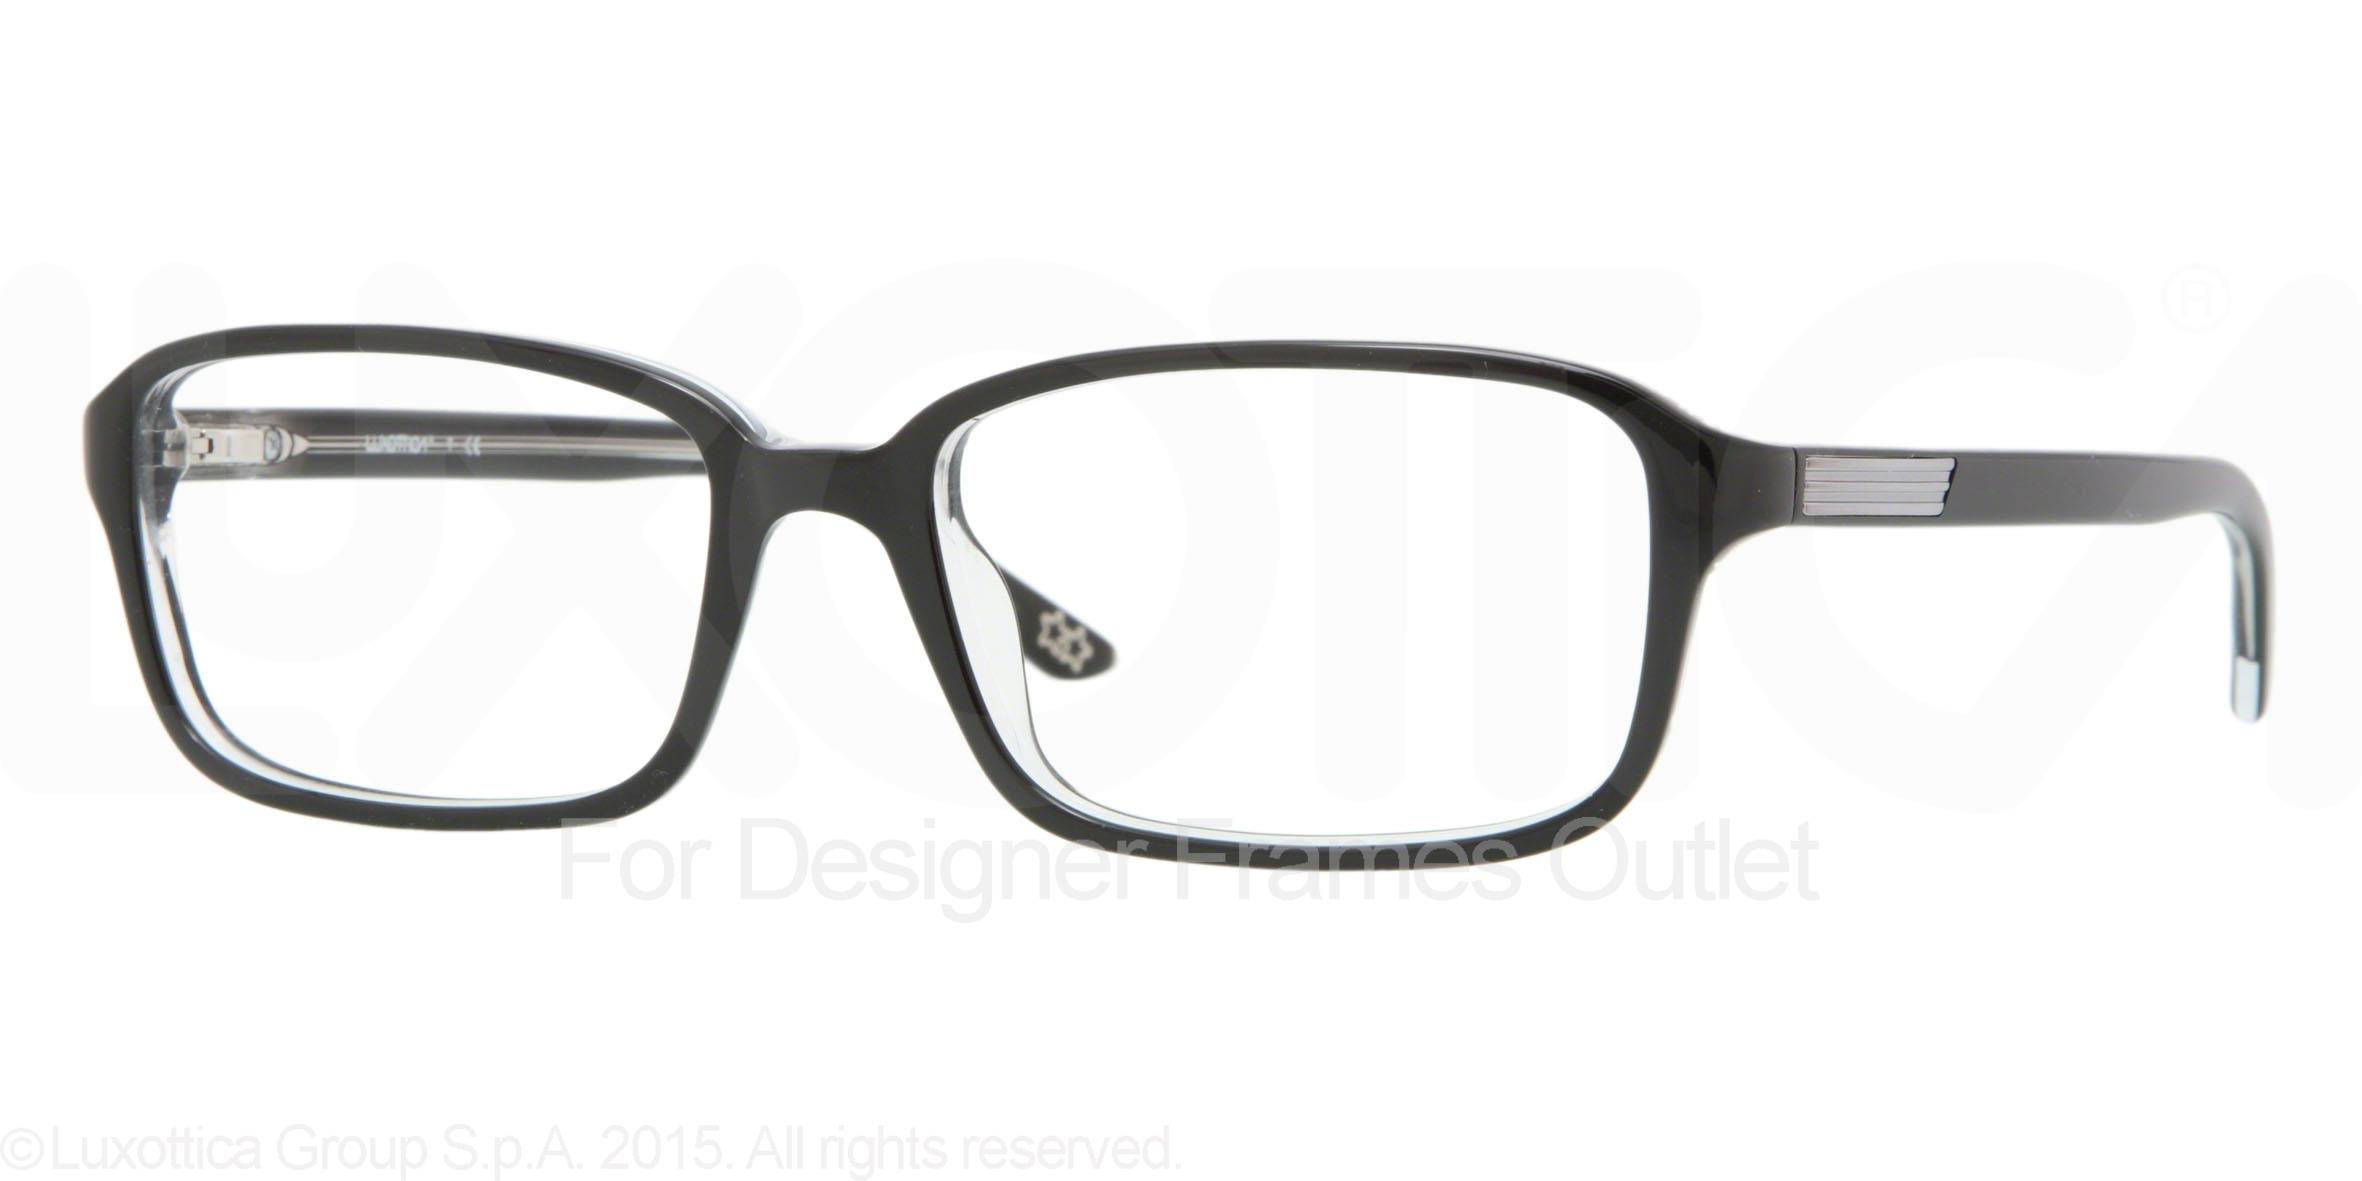 Designer Frames Outlet. Luxottica Eyeglasses